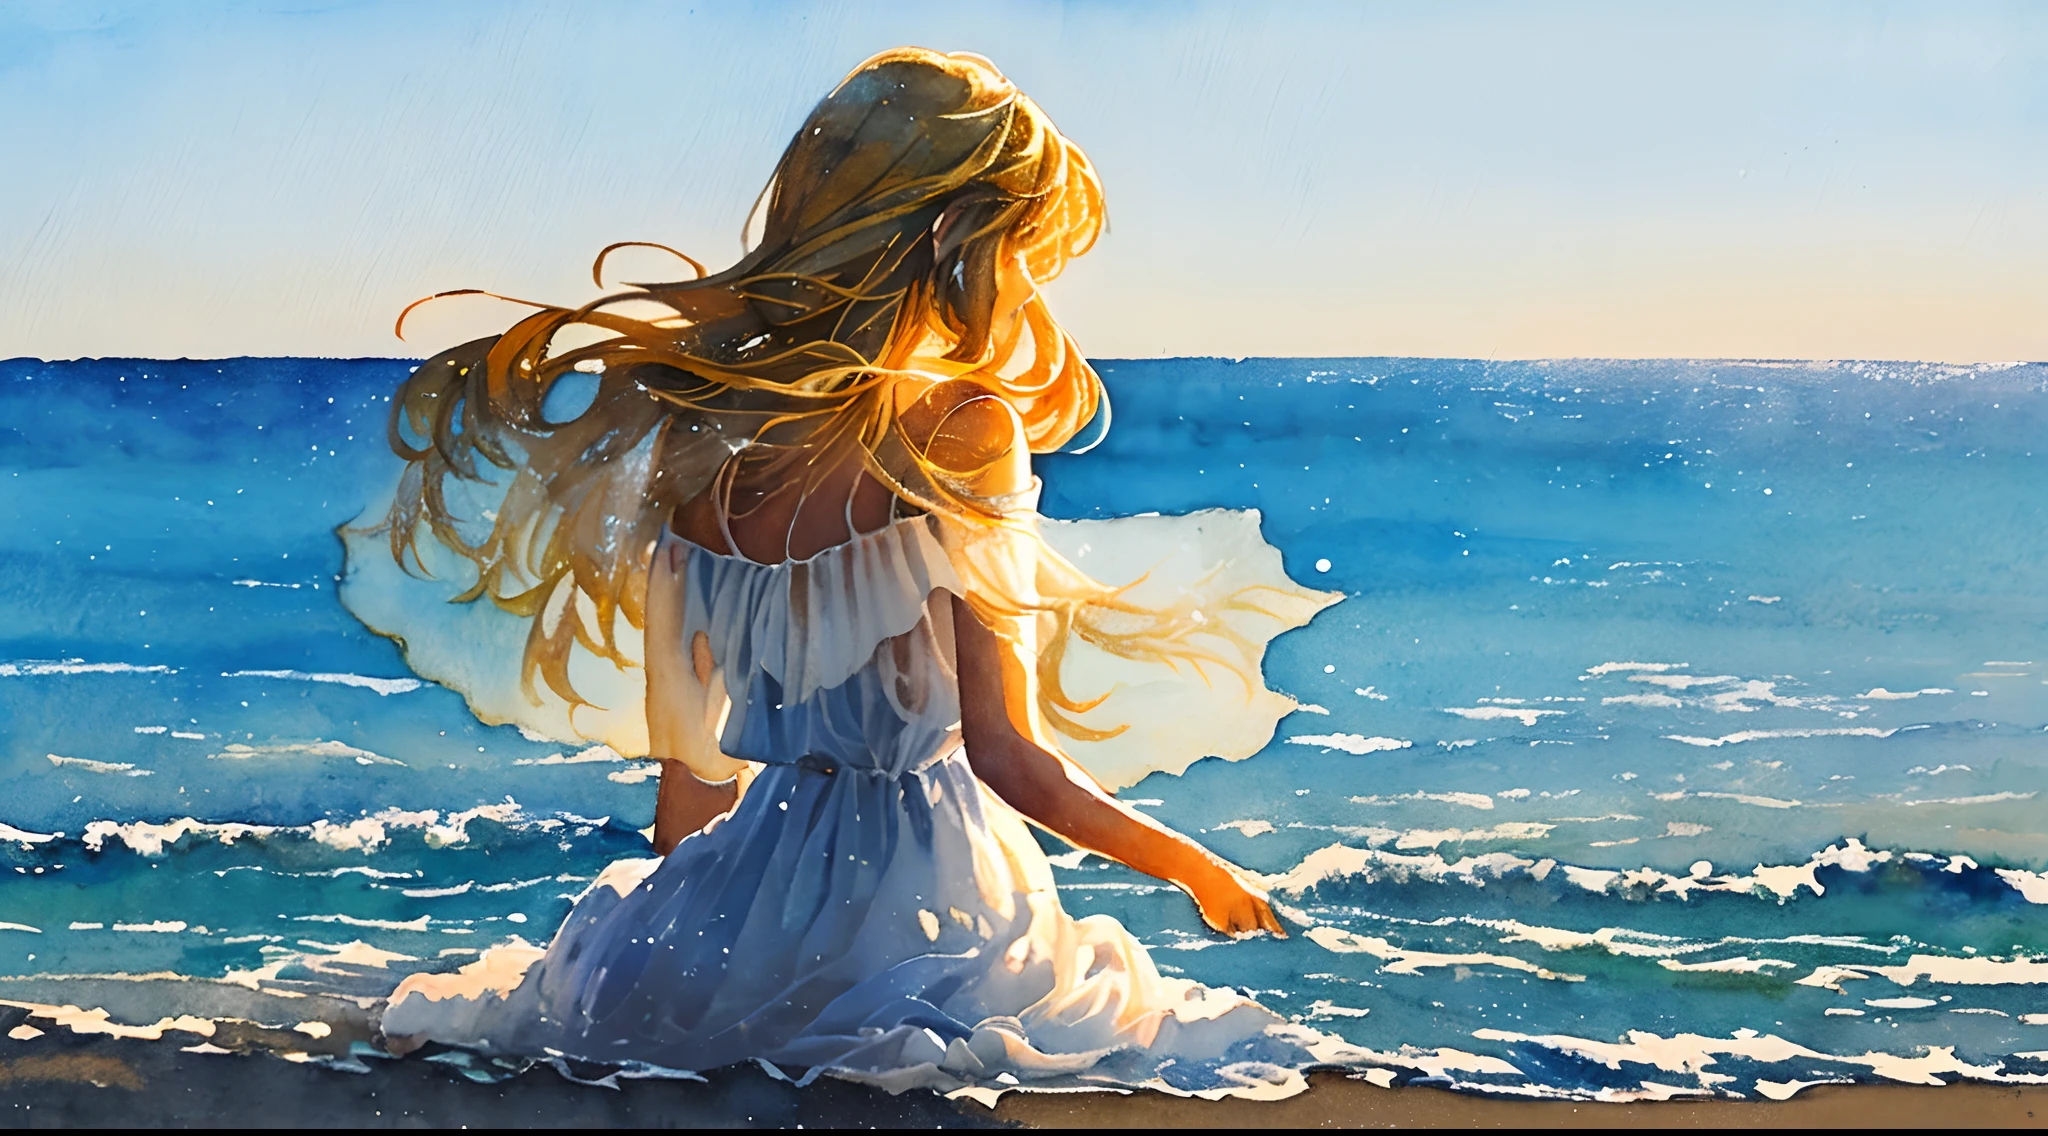 傑作, ミニマルグラフィックアート, ((水彩画)),((筆遣い)), 浜辺に座って海を眺める最も美しい女性の水彩画, 白 ((透明なシースルードレス)) 風に吹かれて, long blond hair 風に吹かれて, 白 background, バックライト, ボリューム照明